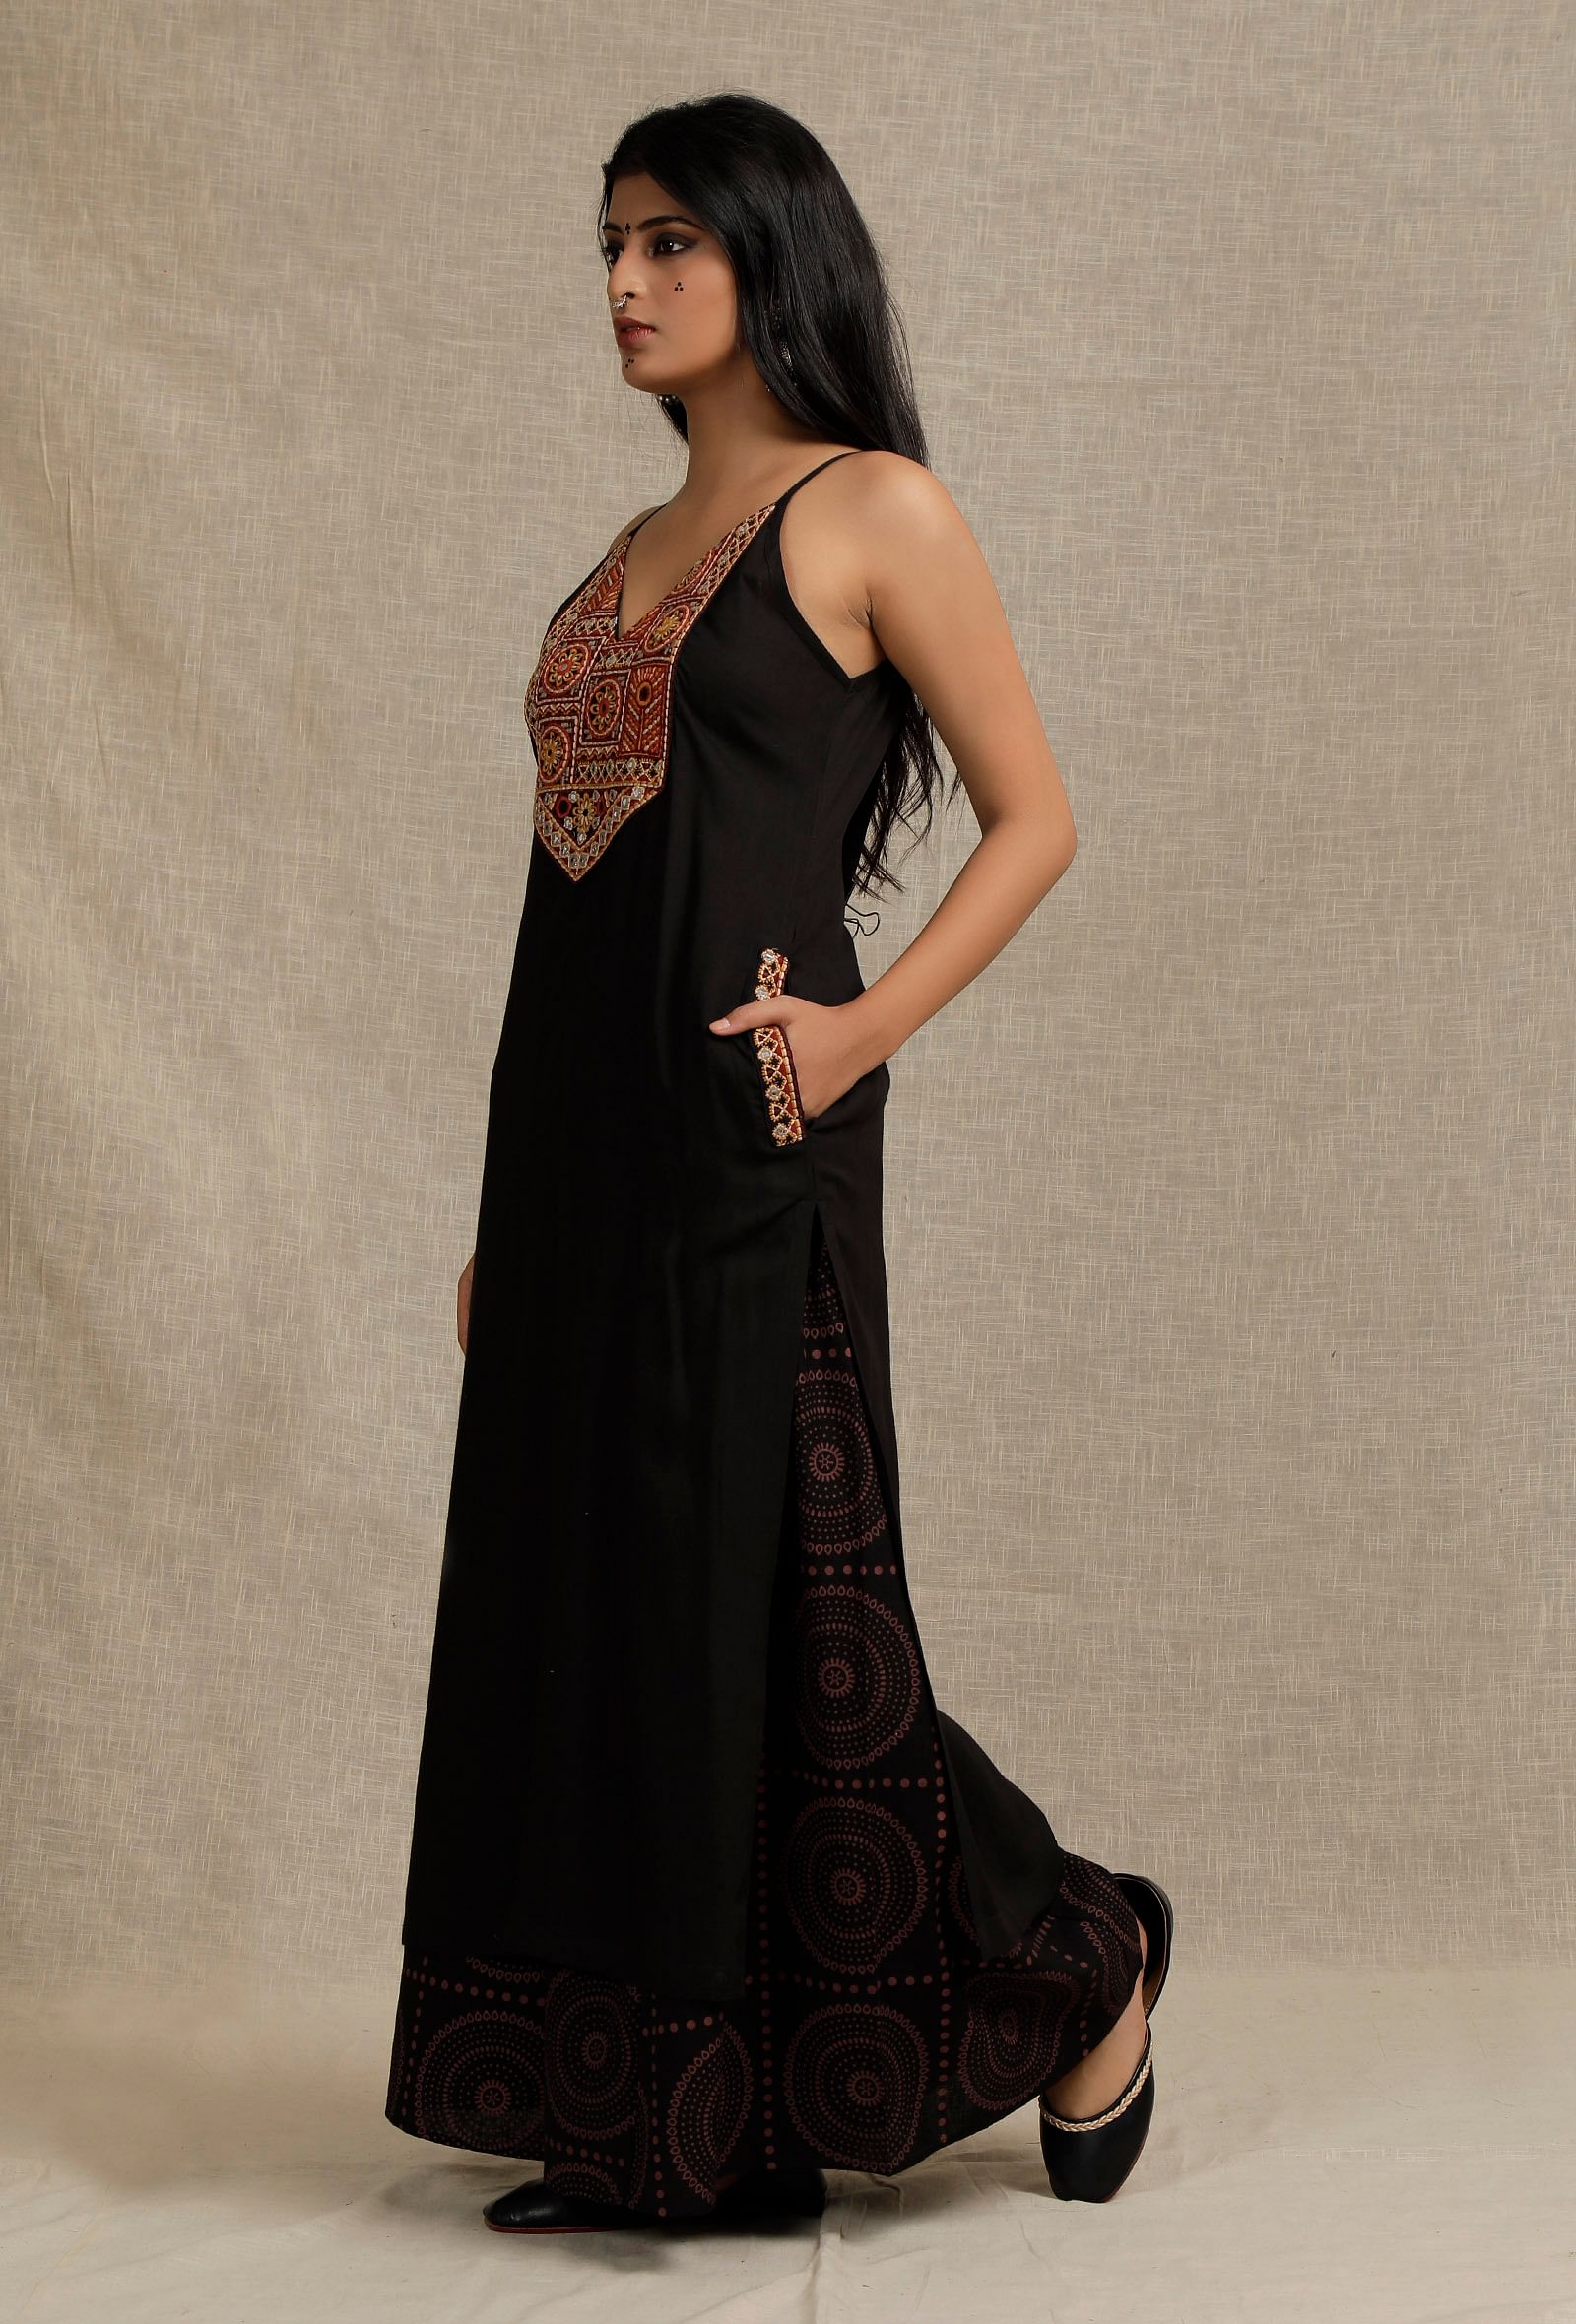 Ganga Fashion 937 Tansy Black Unstiched Silk Salwar Suit